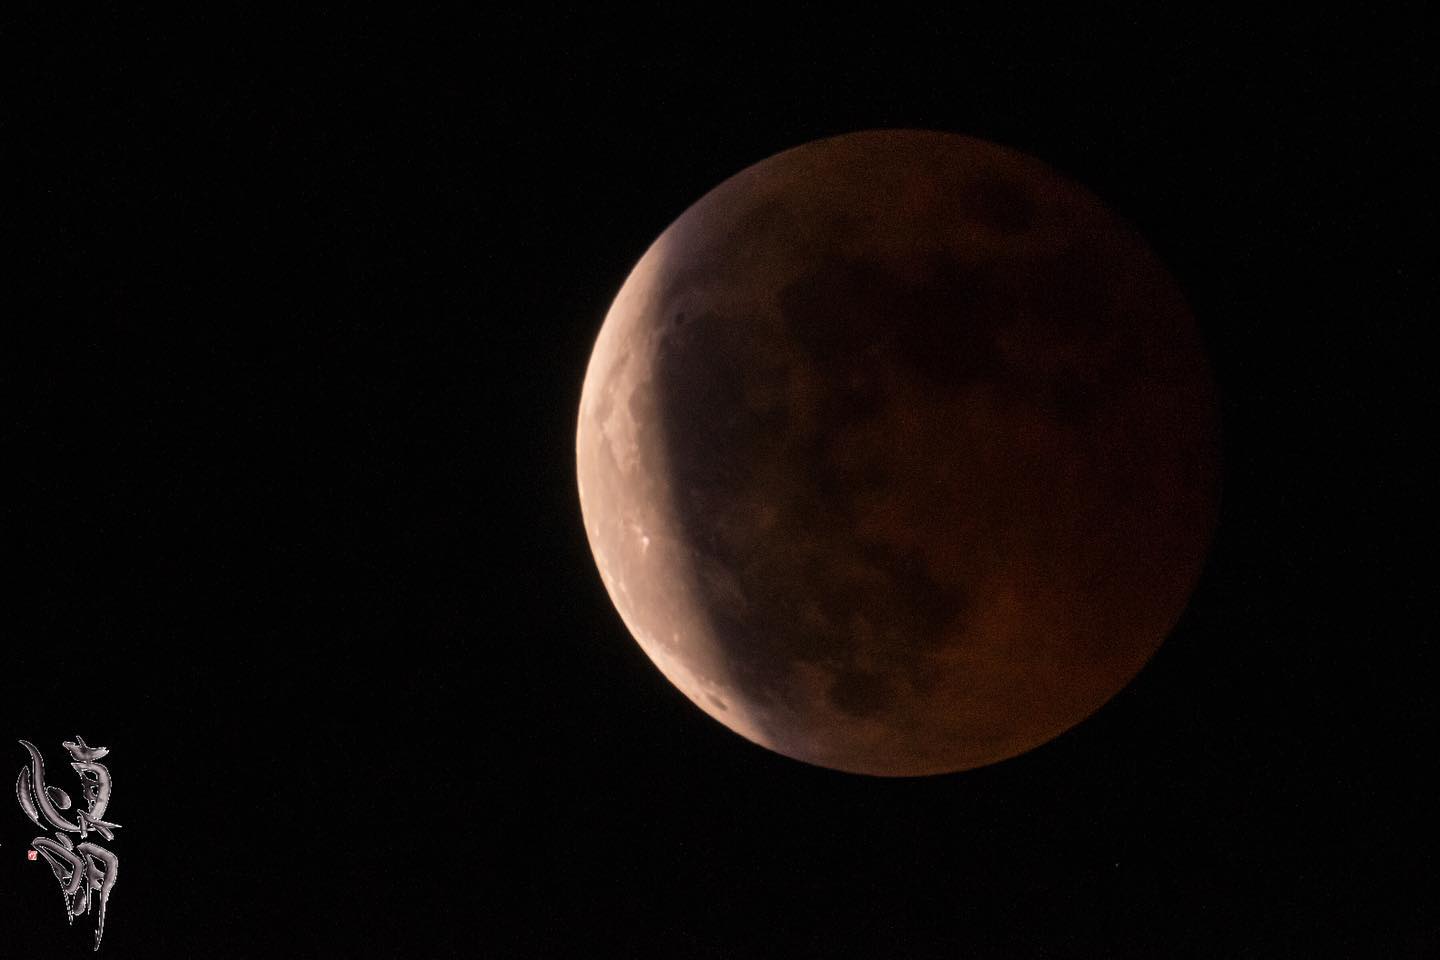 Instagram更新しました。 eg. おはようございます。和歌山のカメラマン、はれのひ工房の末藤です。昨晩は皆既月食でしたね。お月さまが90分ほども地球の影に隠れる。地球の大きさを感じました。写真は1000mmの手持ちでF11／1/60秒での撮影です。手ブレ補正の進化でこんな事も出来るようになりましたねー、すごい。後半の月が出て来る所はタイムラプスかインターバルタイマーで撮って動画風にしたかったのですが、三脚を持って帰ってきていなくて^_^;手持ちでコレが限界です。 – from Instagram